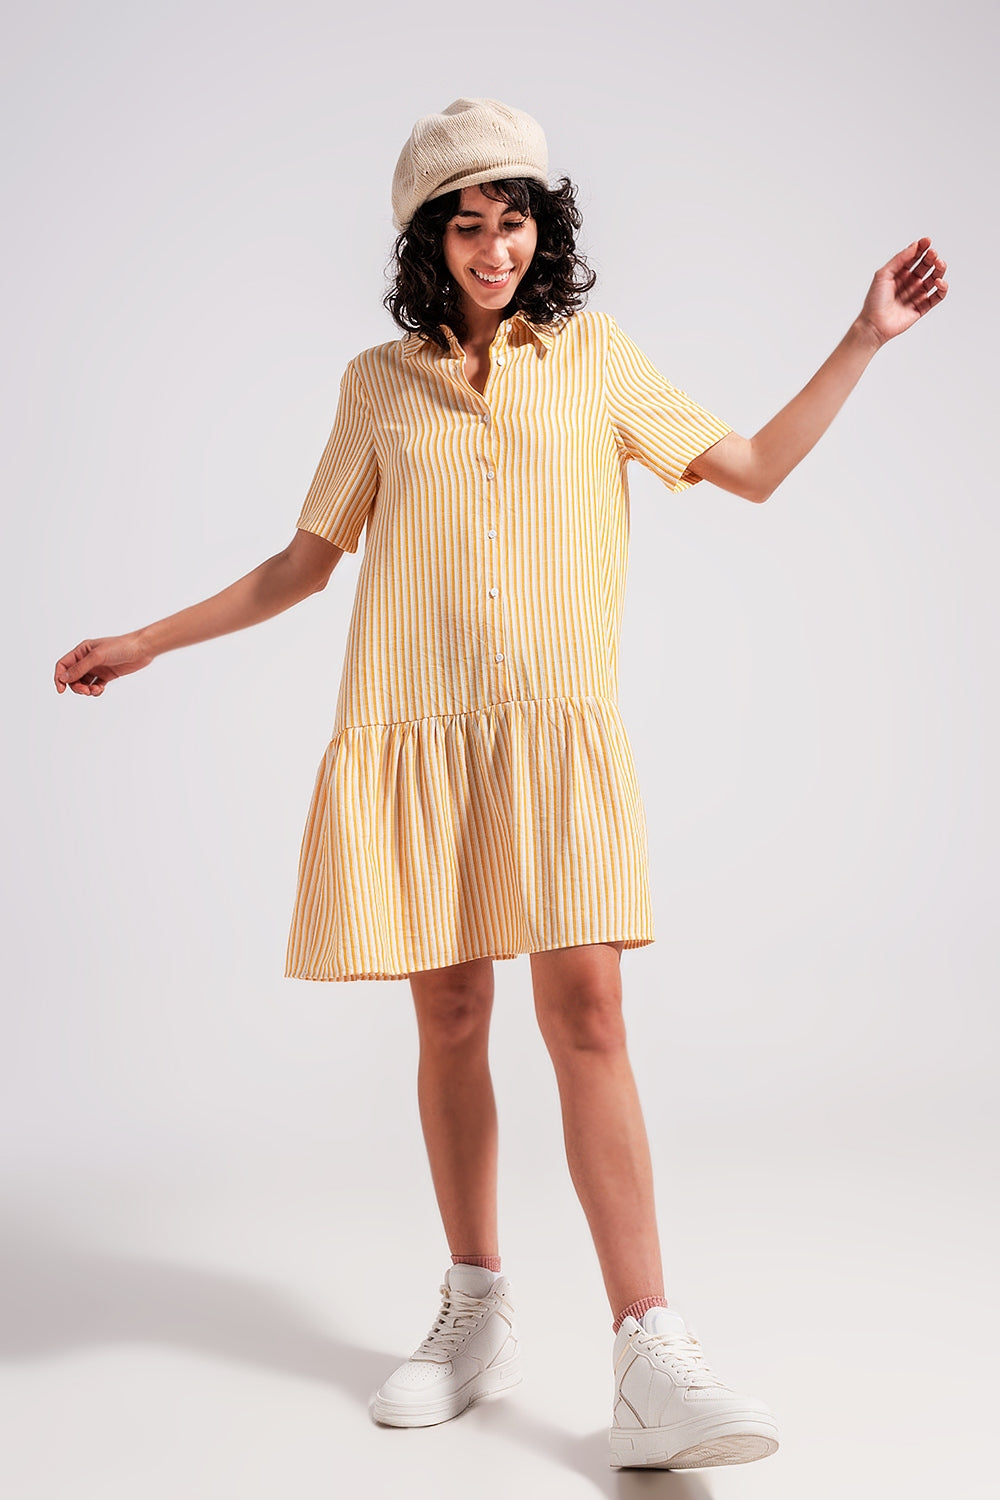 Stripe print mini dress in yellow Szua Store